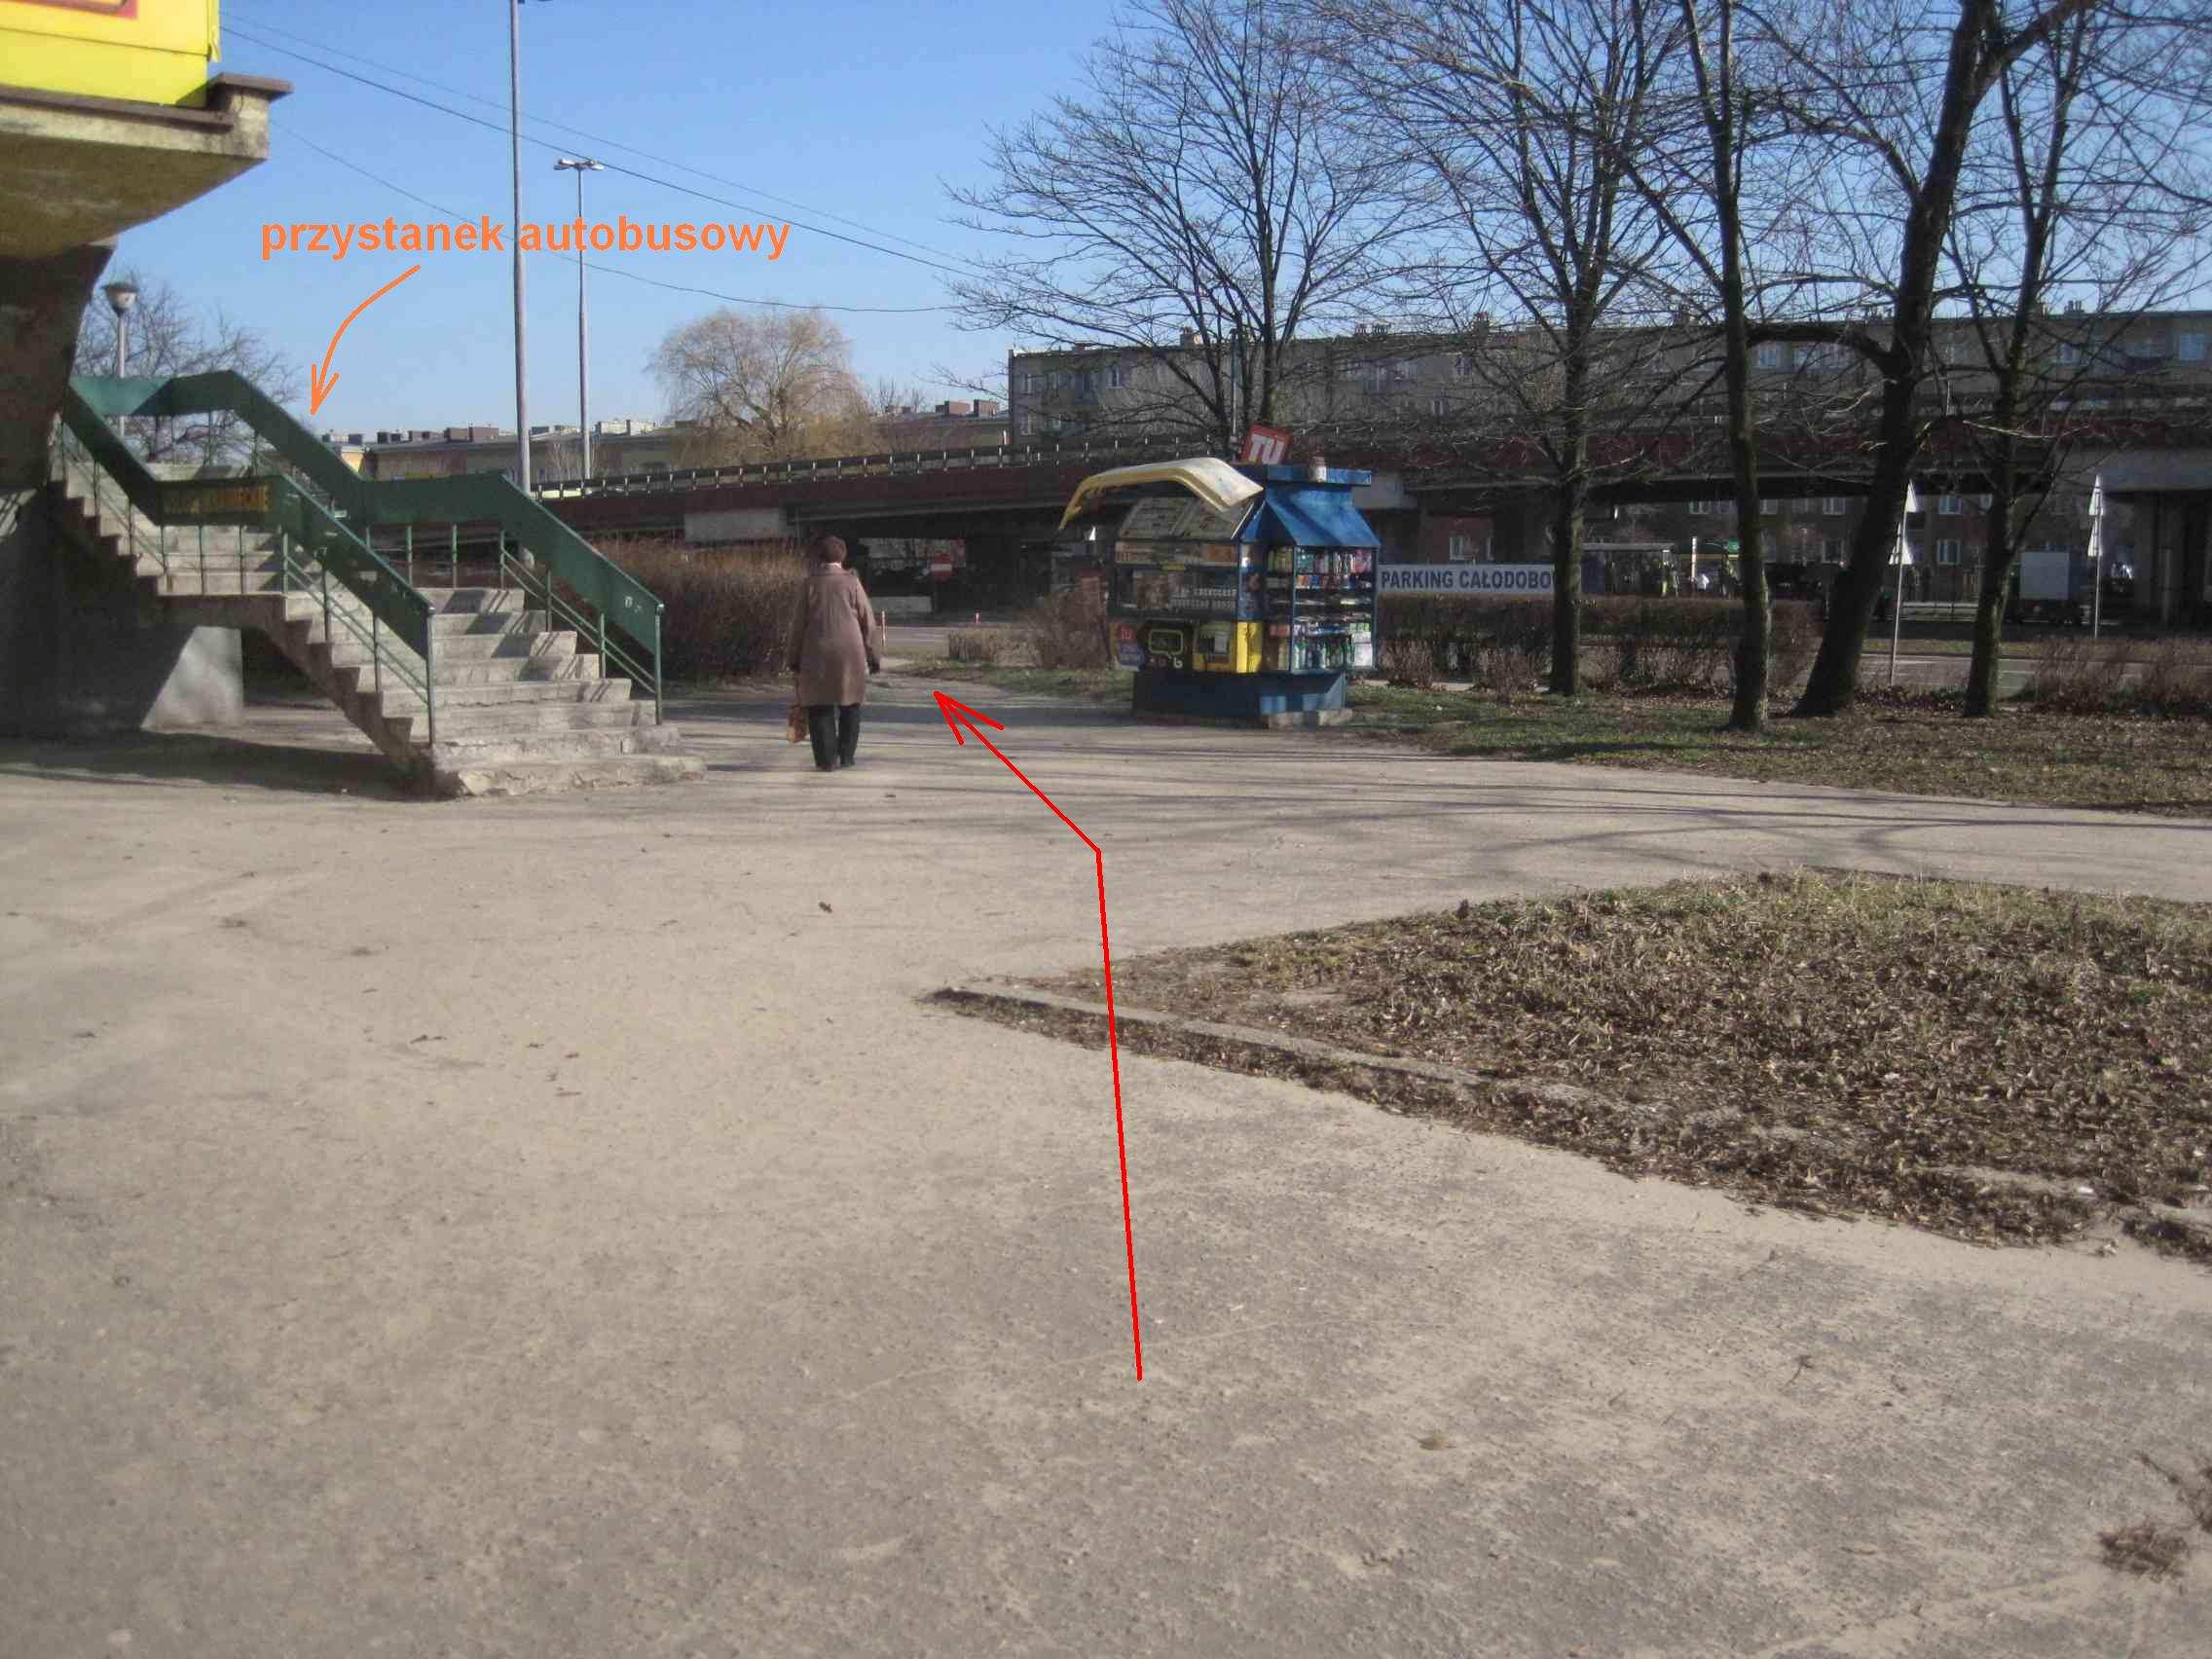 Chodnik wzdłuŝ pawilonu i skweru. Nawierzchnia częściowo z kostki, reszta z asfaltu - co zapewne jest skutkiem róŝnych własności poszczególnych fragmentów przestrzeni publicznej.